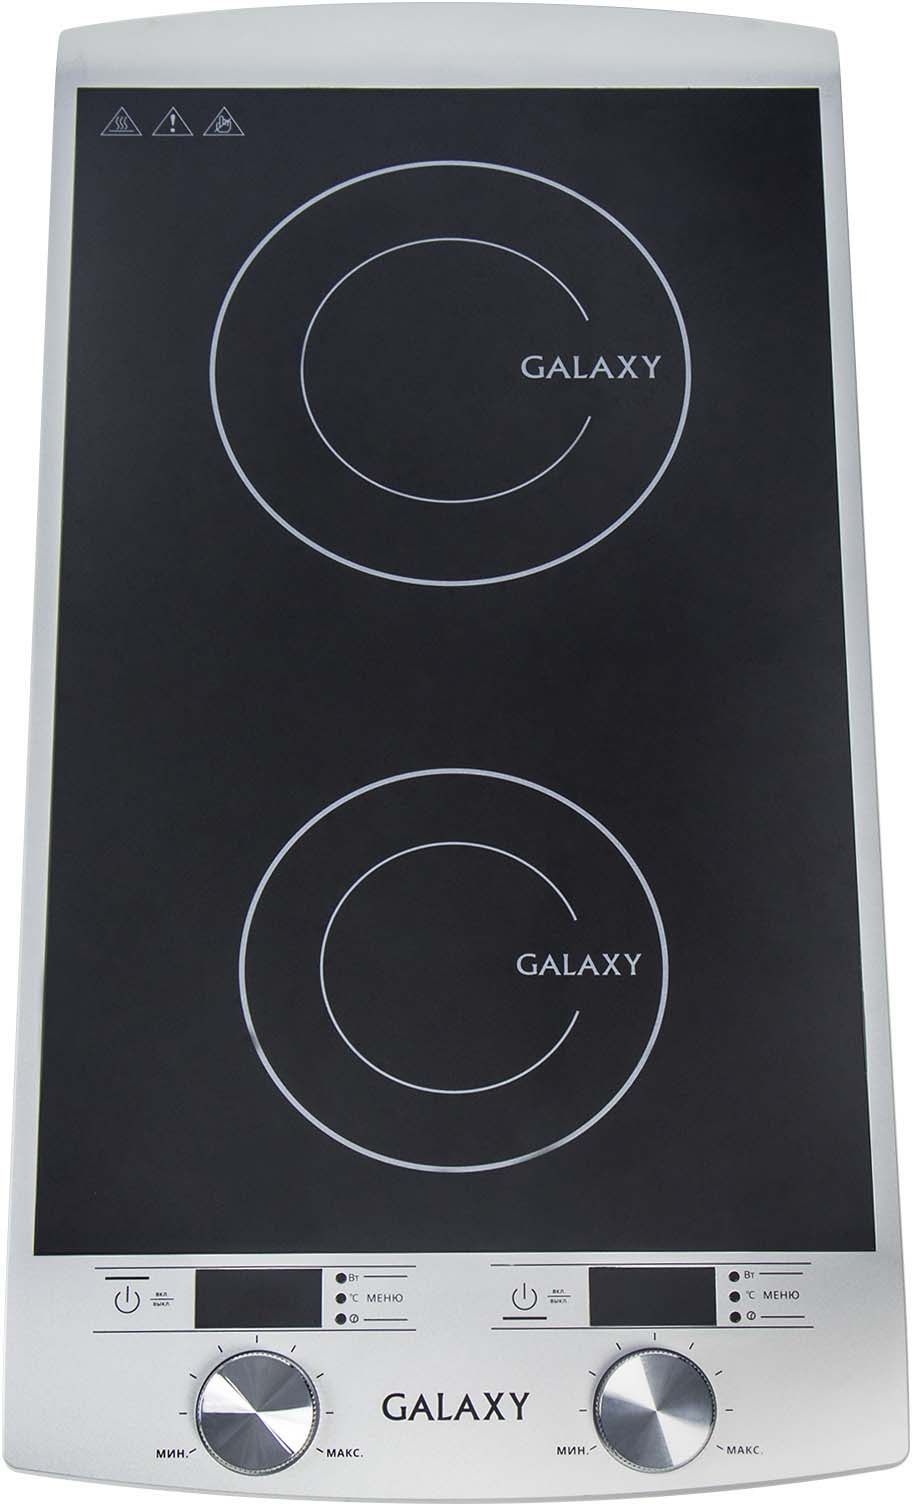    Galaxy GL 3057, : , 